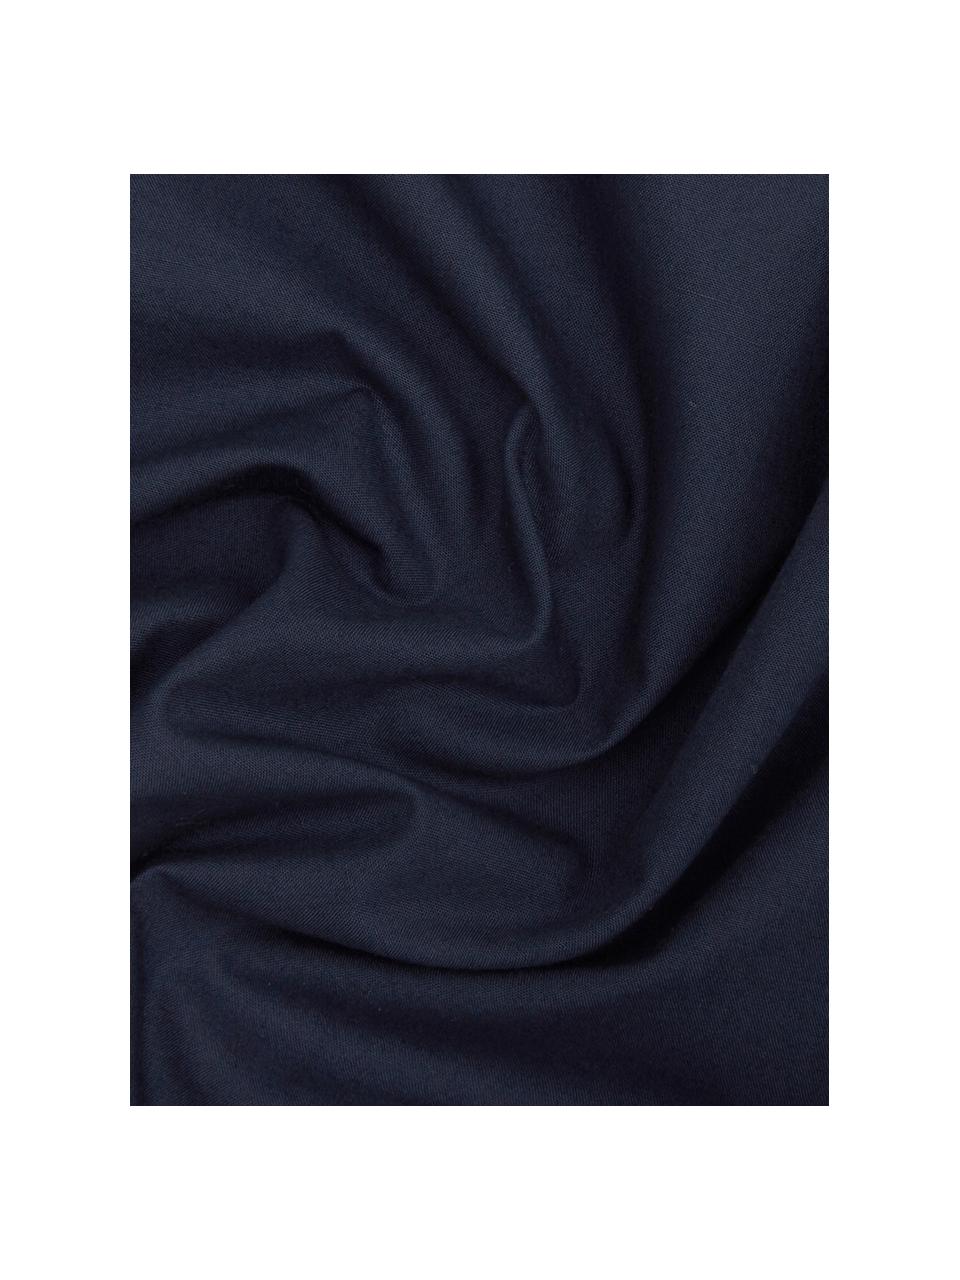 Parure copripiumino in percalle Elsie, Tessuto: percalle Densità del filo, Blu scuro, Larg. 255 x Lung. 200 cm, 3 pz